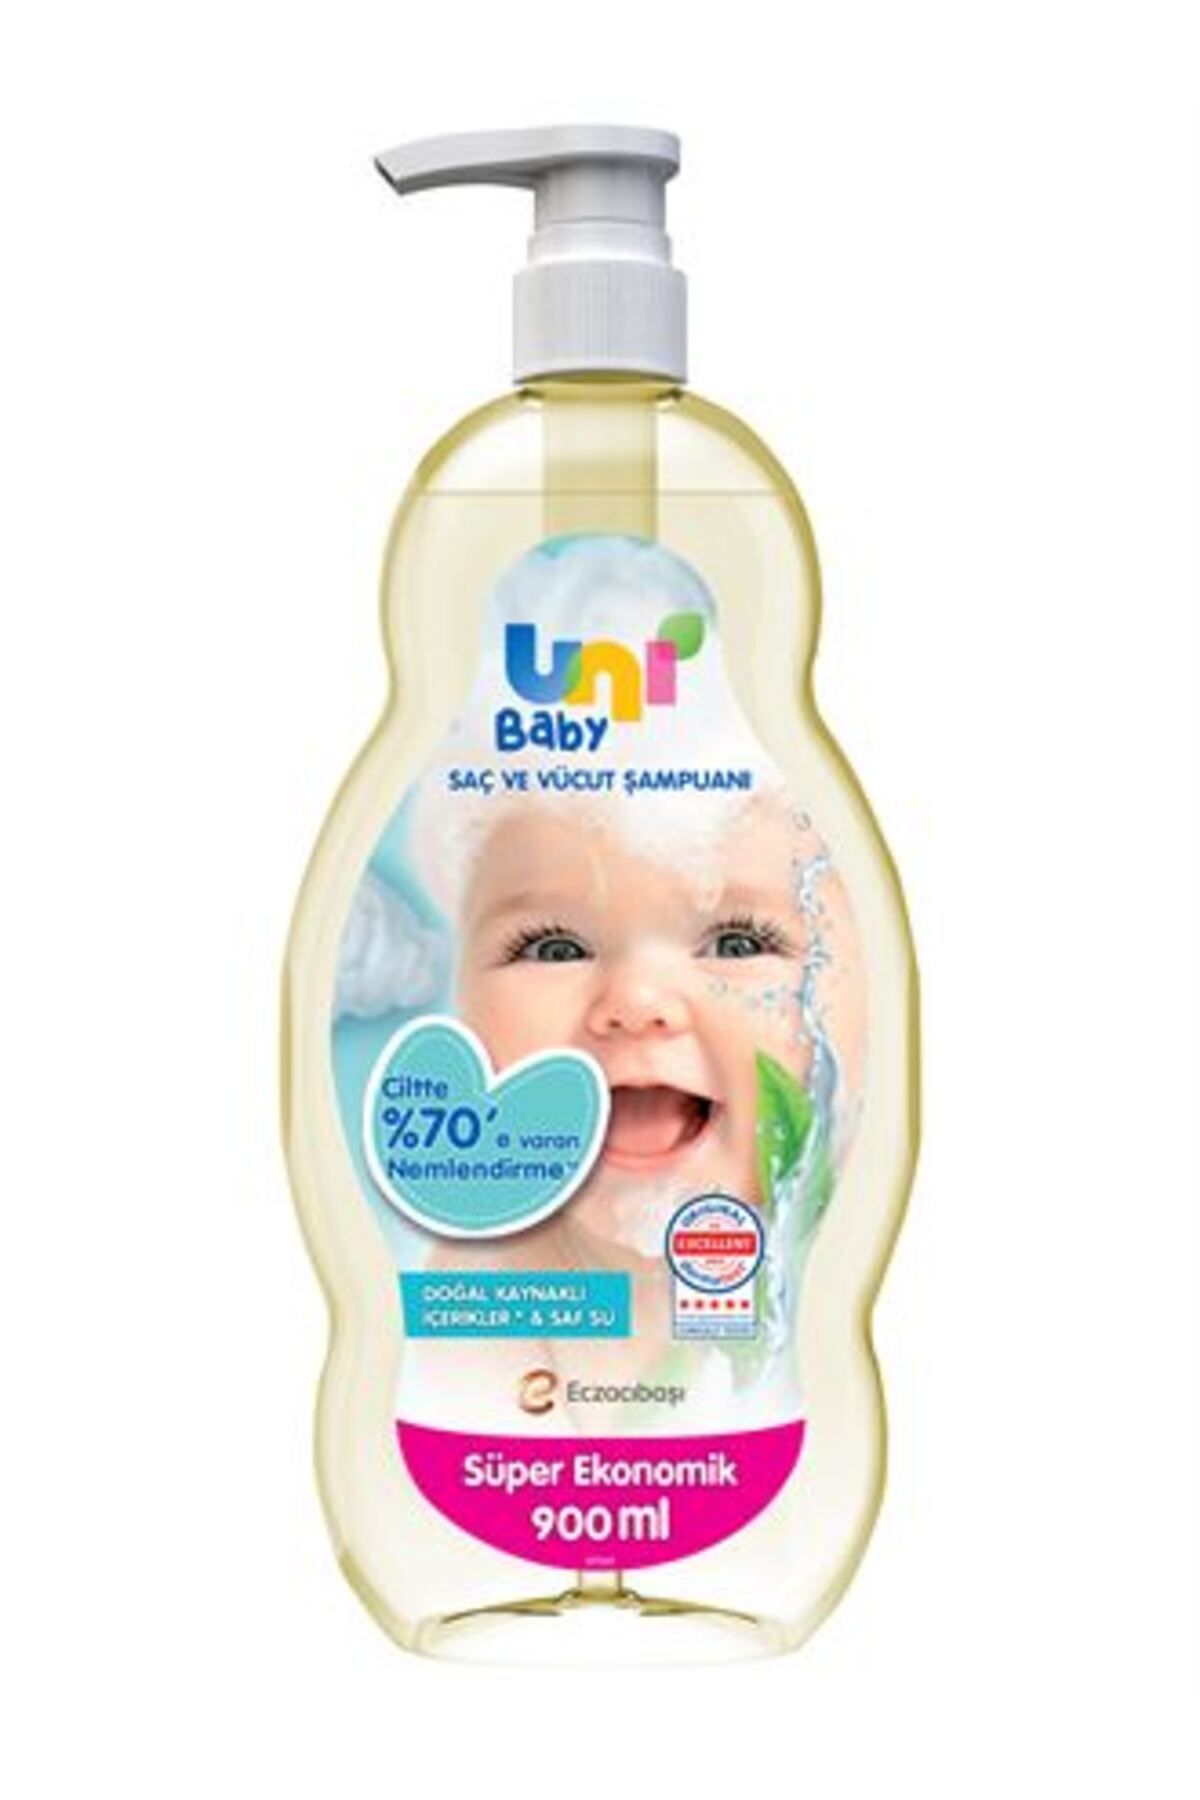 Uni Baby Bebek Saç Ve Vücut Şampuanı 900 ml